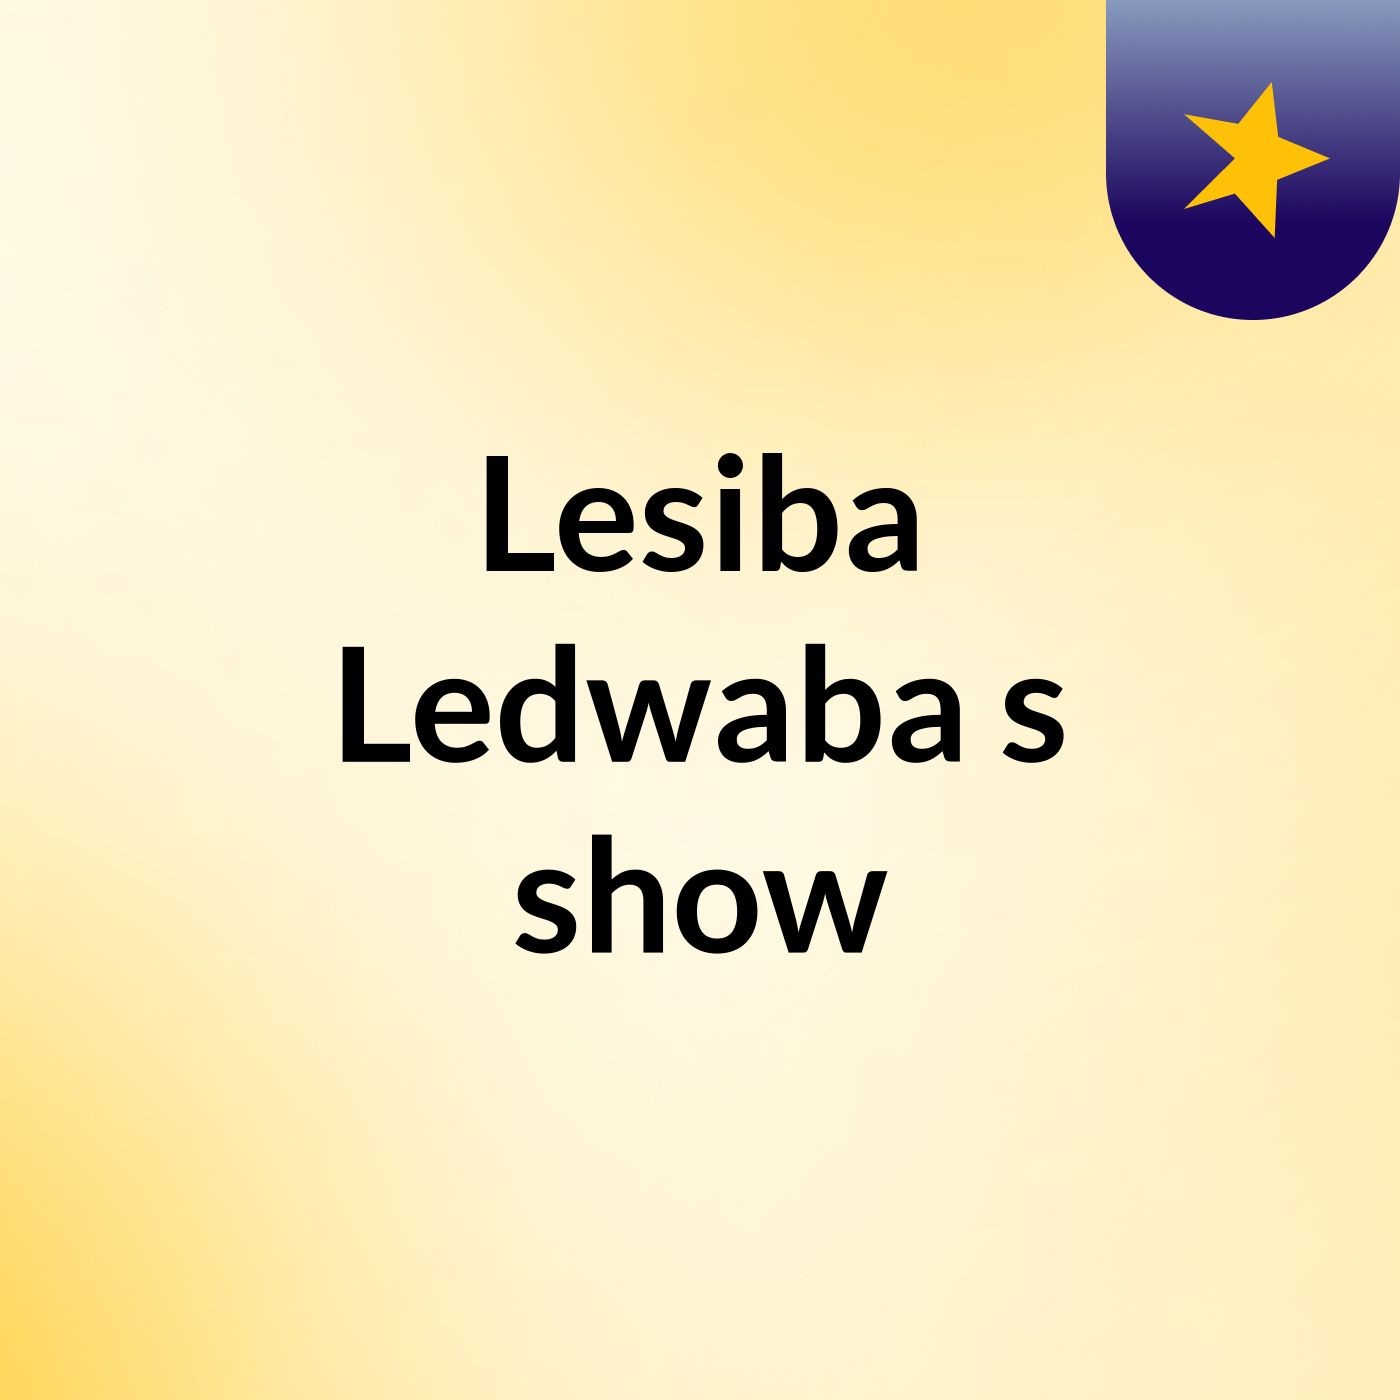 Lesiba Ledwaba's show